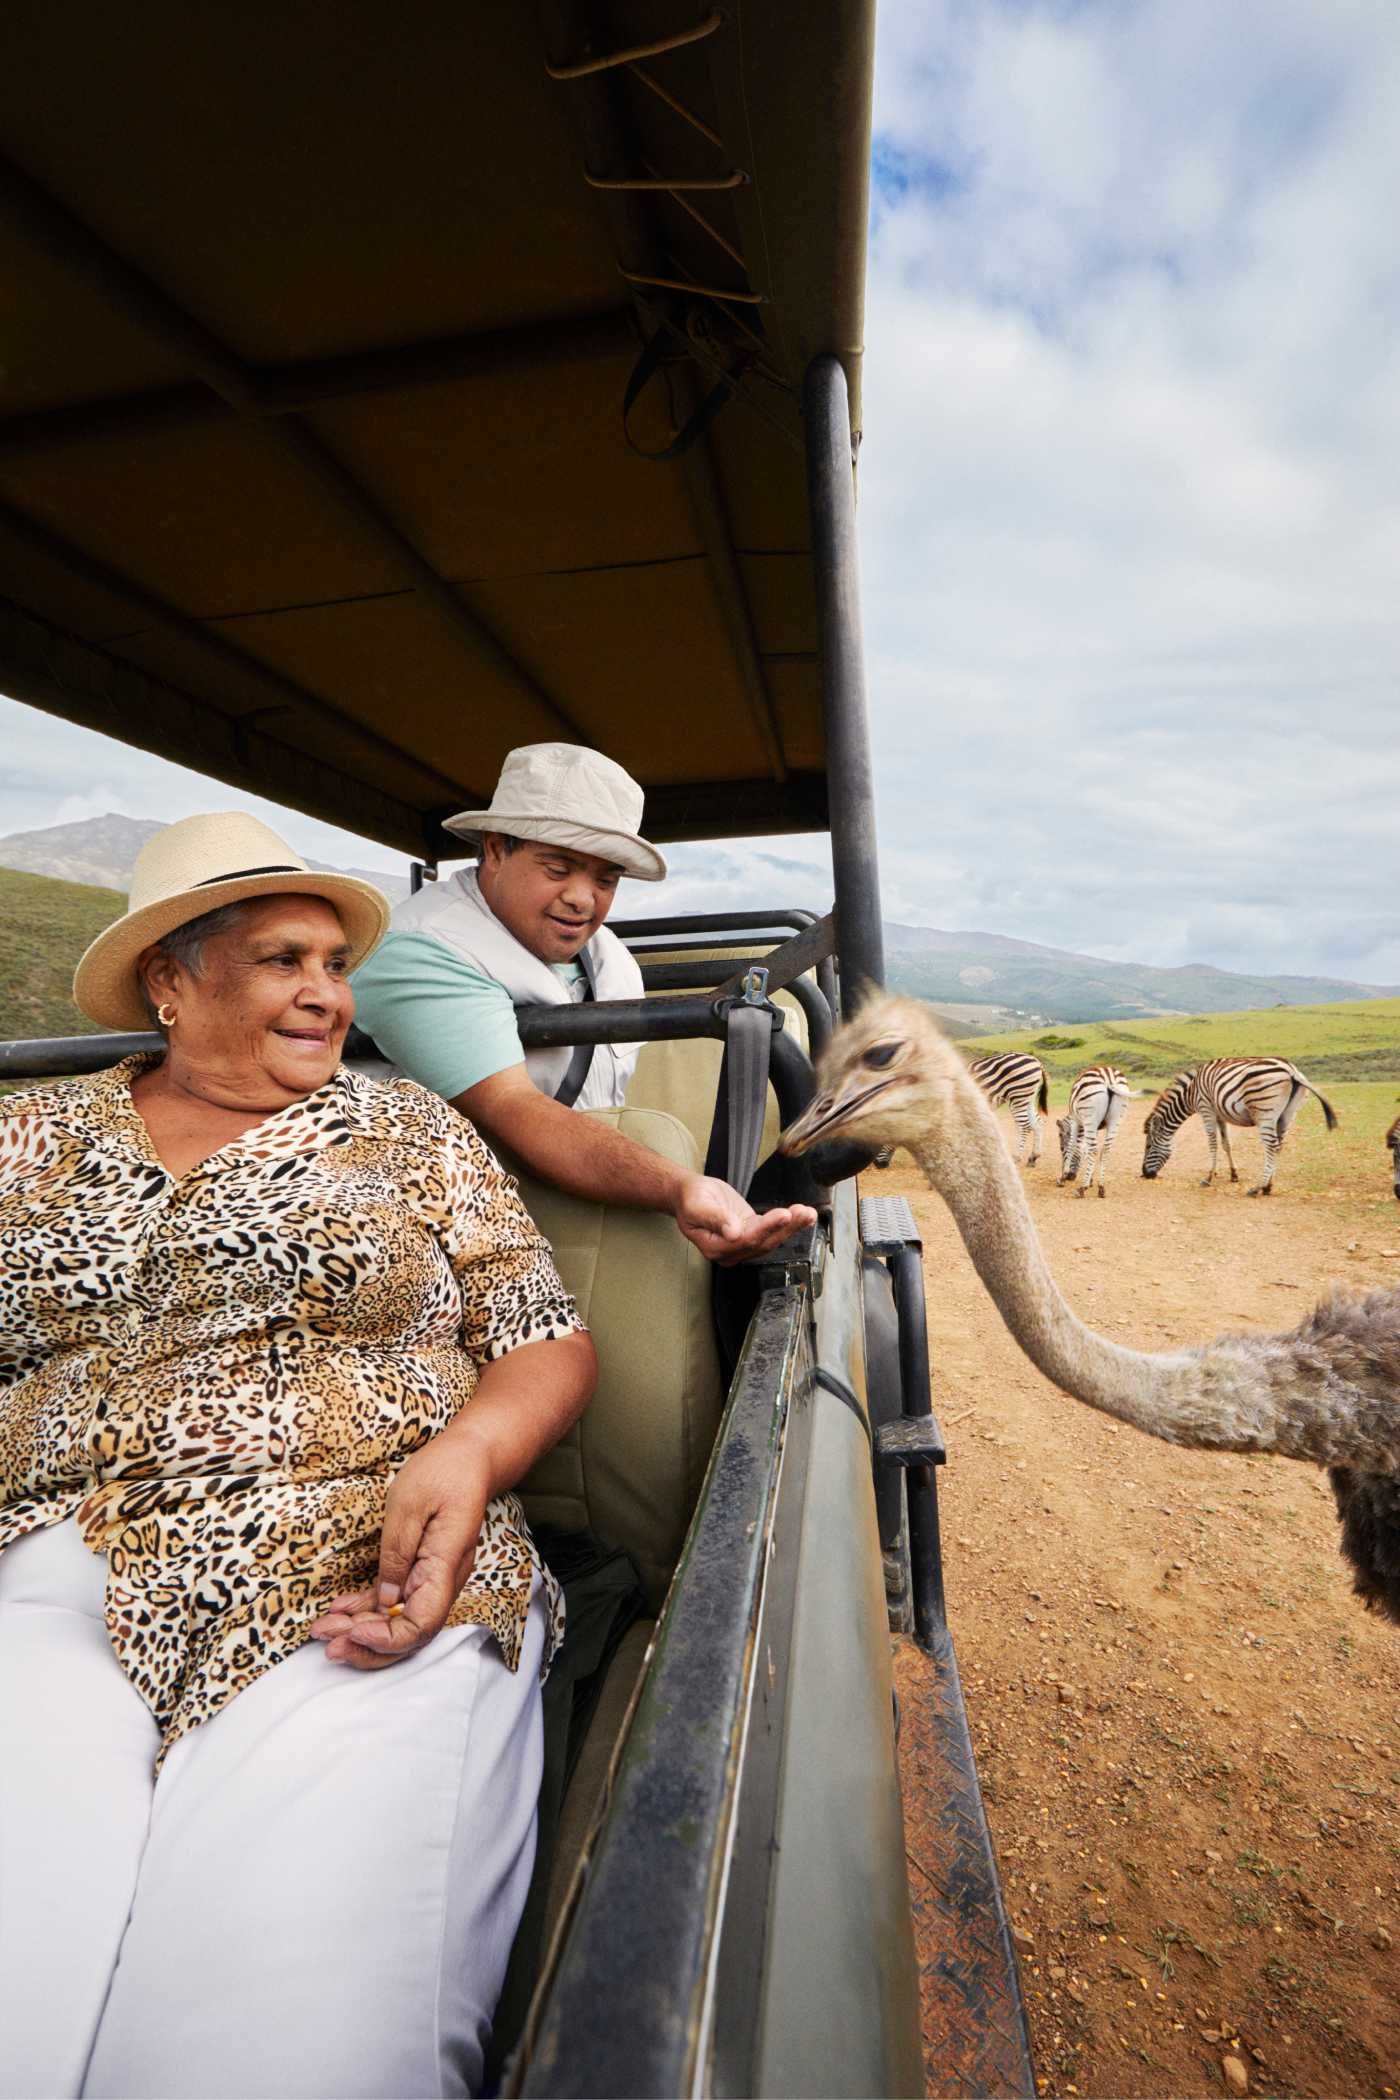 Mãe e filho maravilham-se com a vasta paisagem da África do Sul, esperando ver um guepardo ou outro dos “cinco grandes”